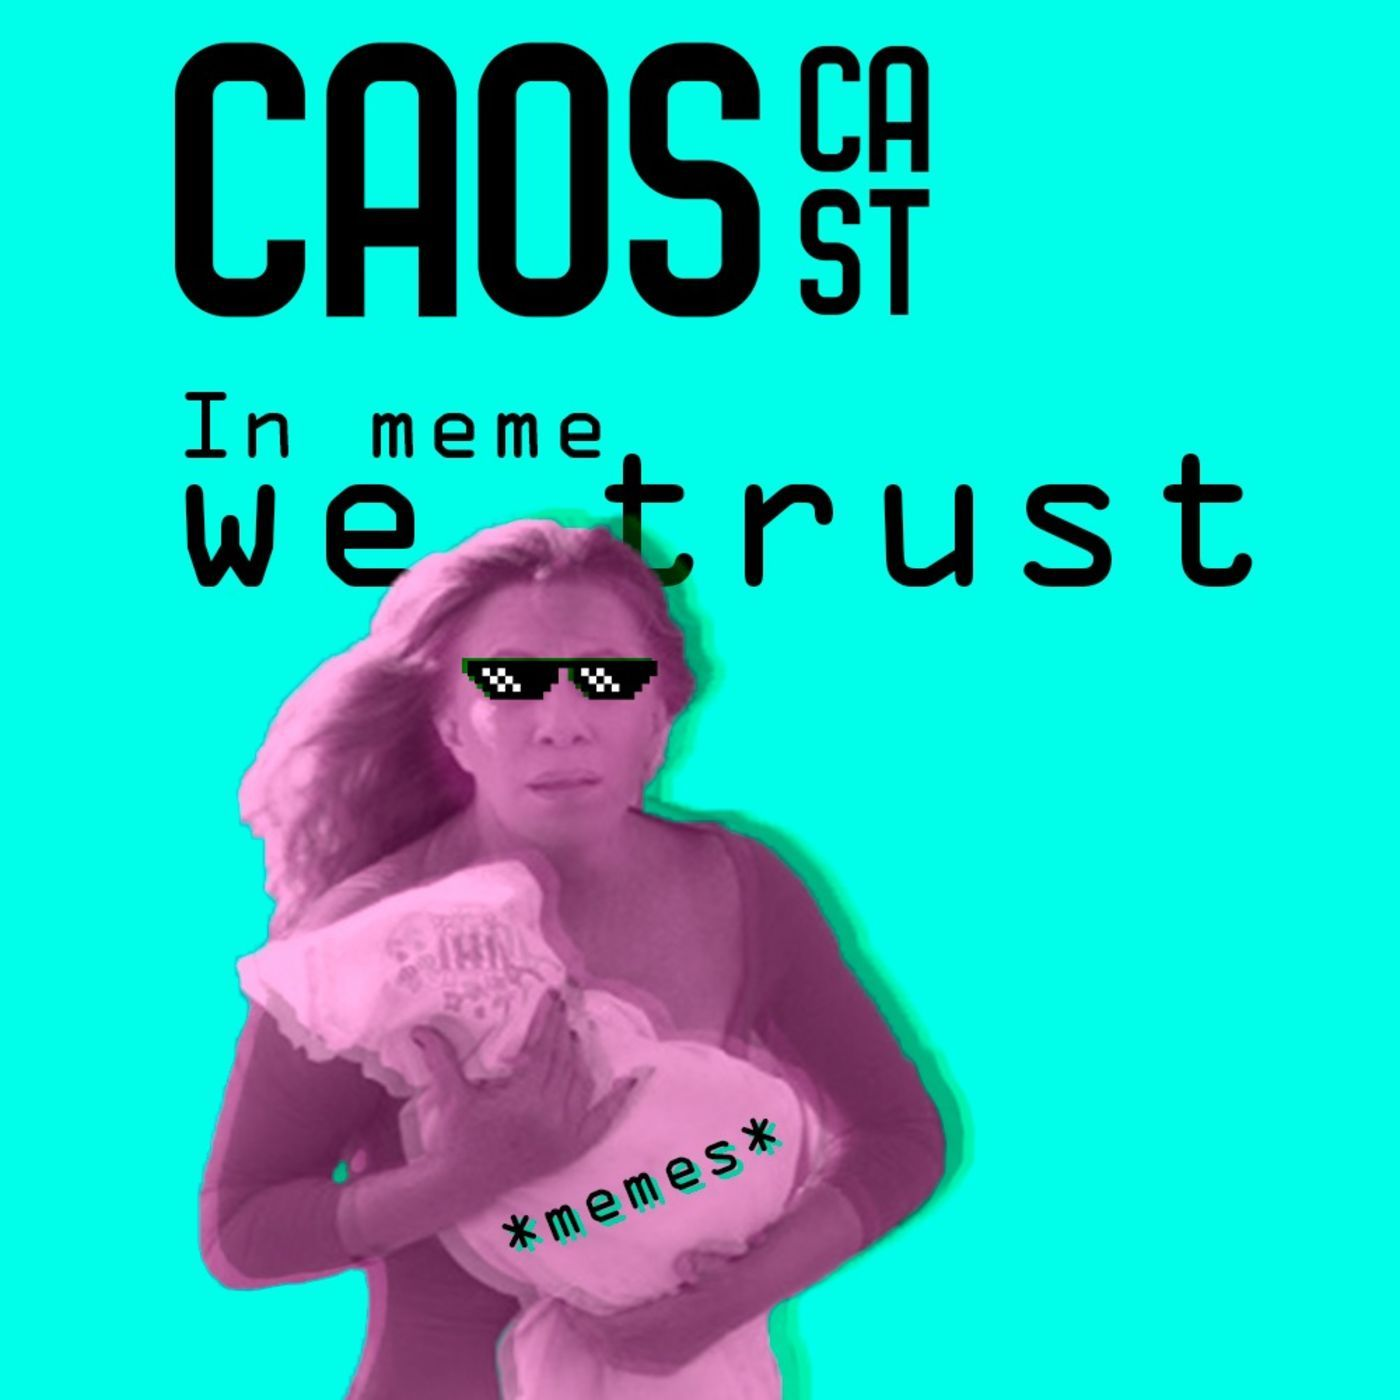 In meme we trust